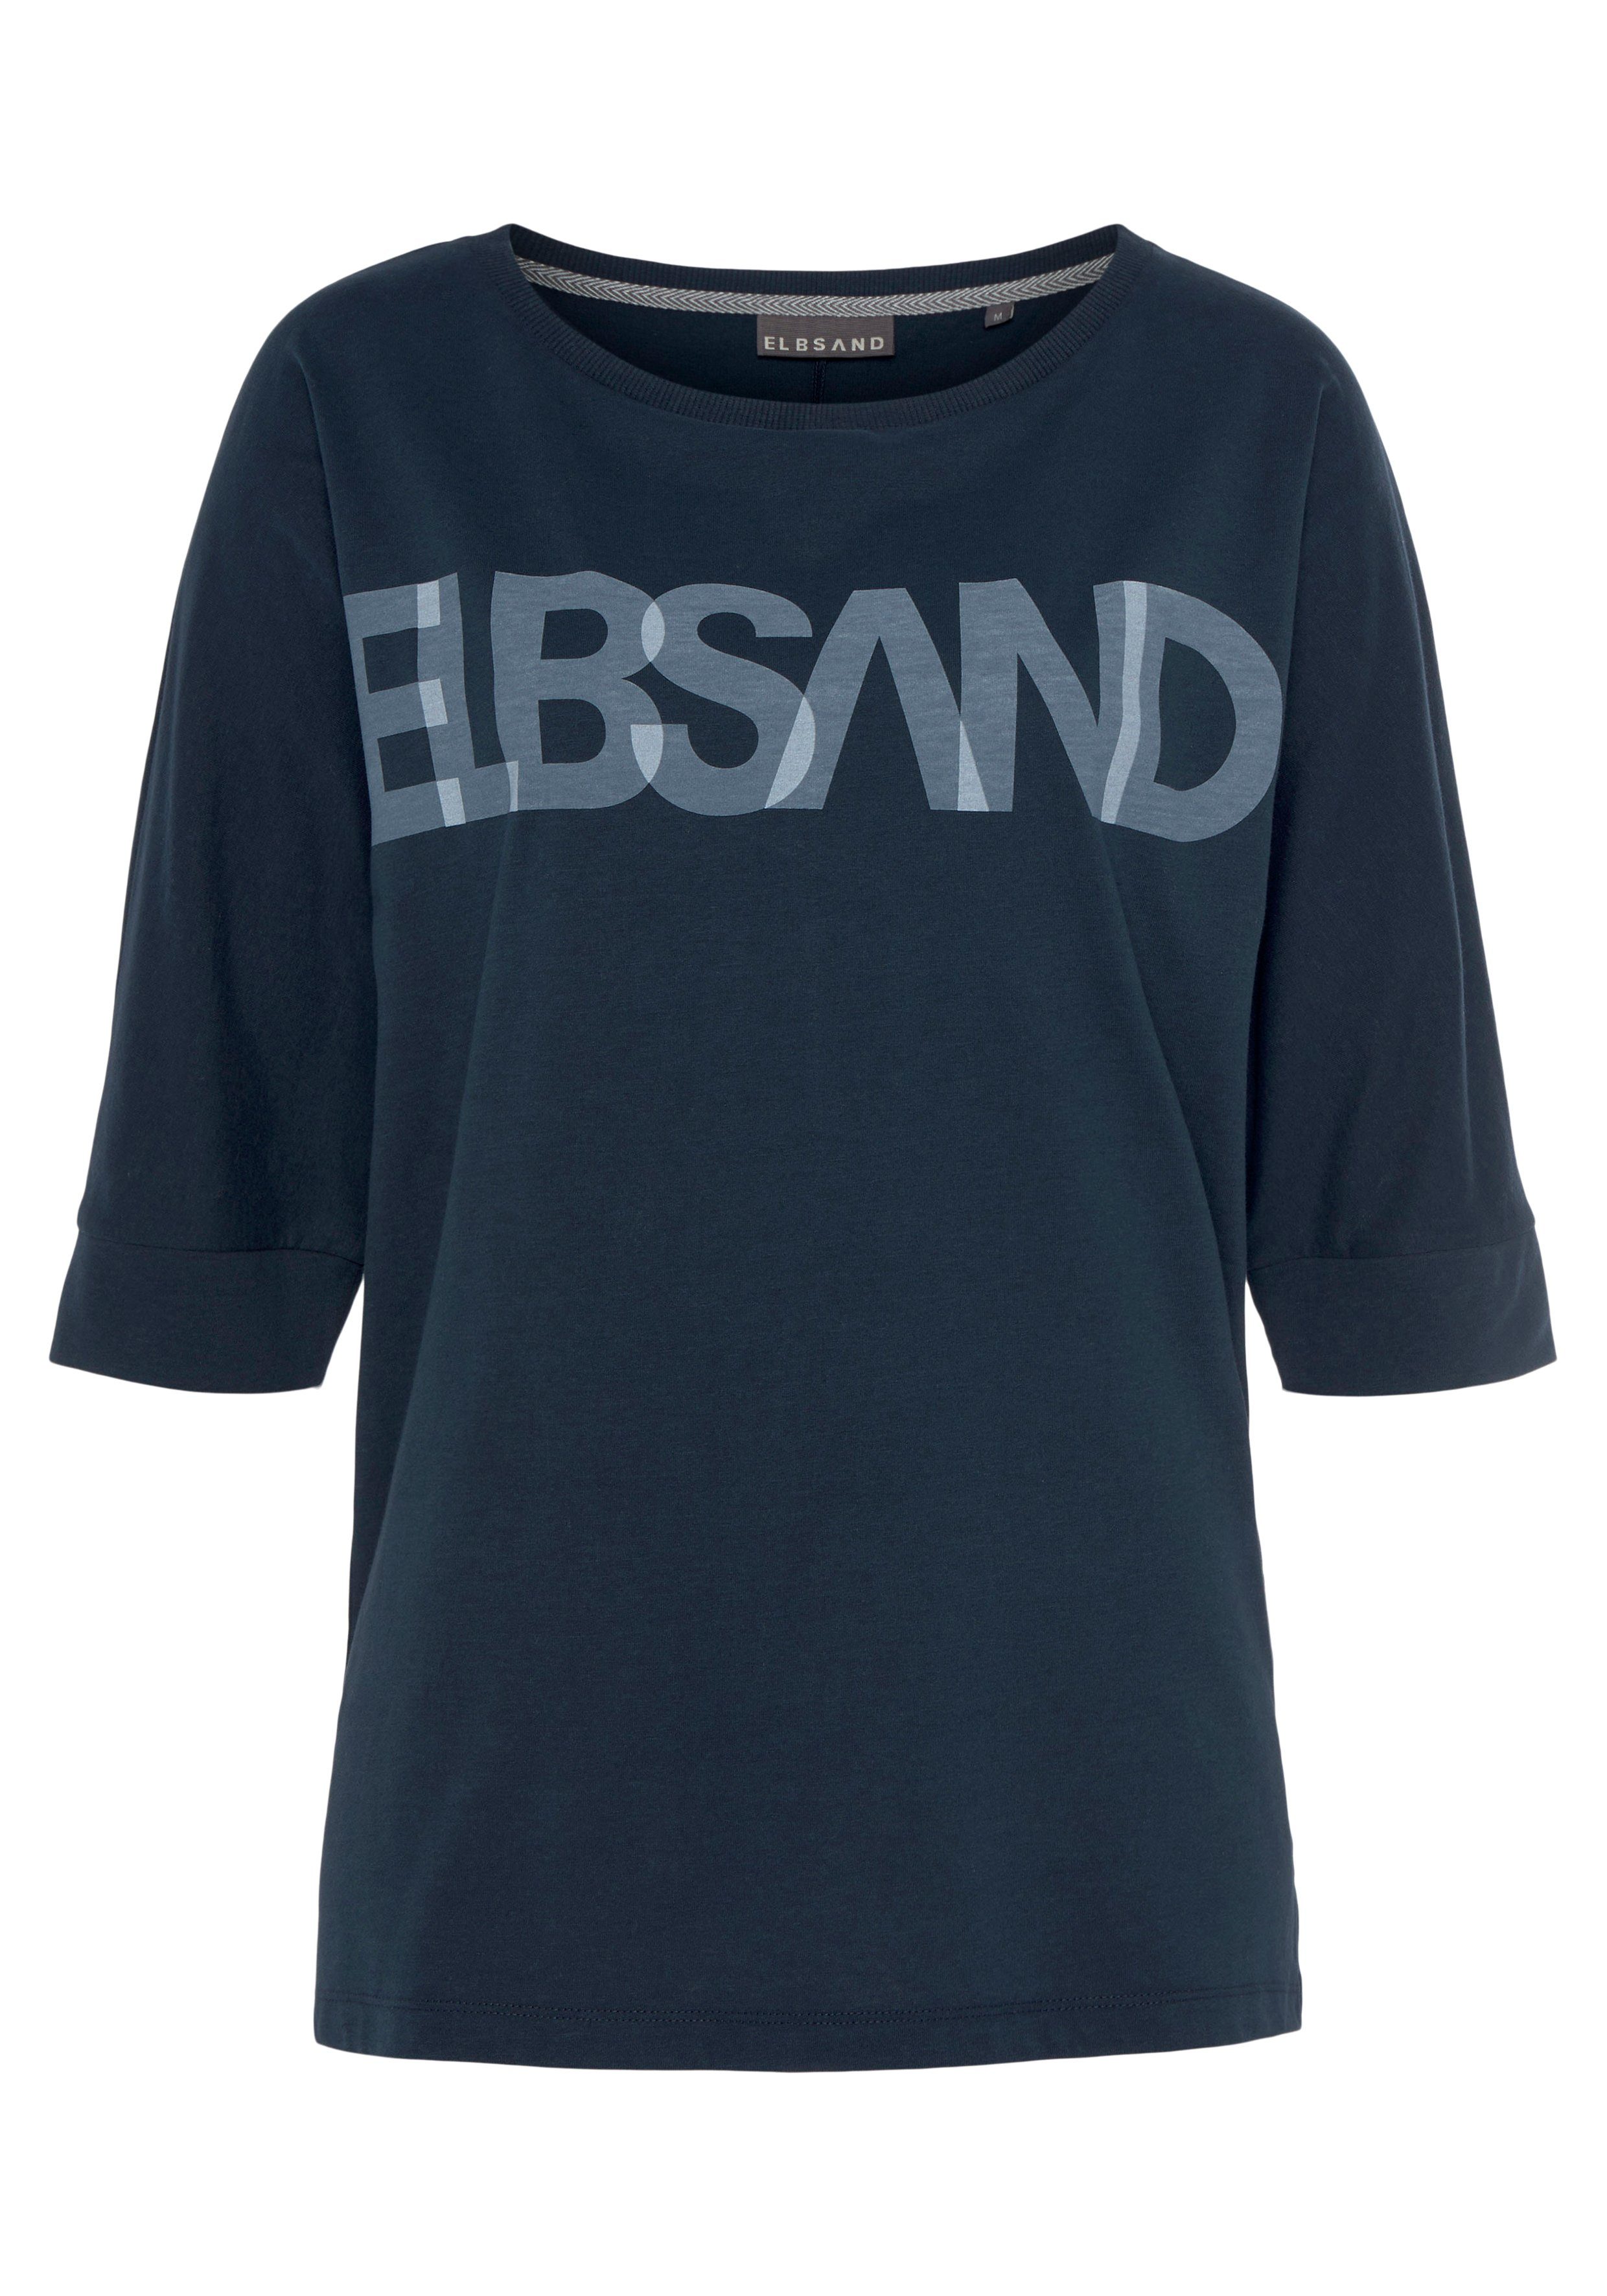 Elbsand 3/4-Arm-Shirt mit Logodruck, Baumwoll-Mix, coldwater lockere Passform